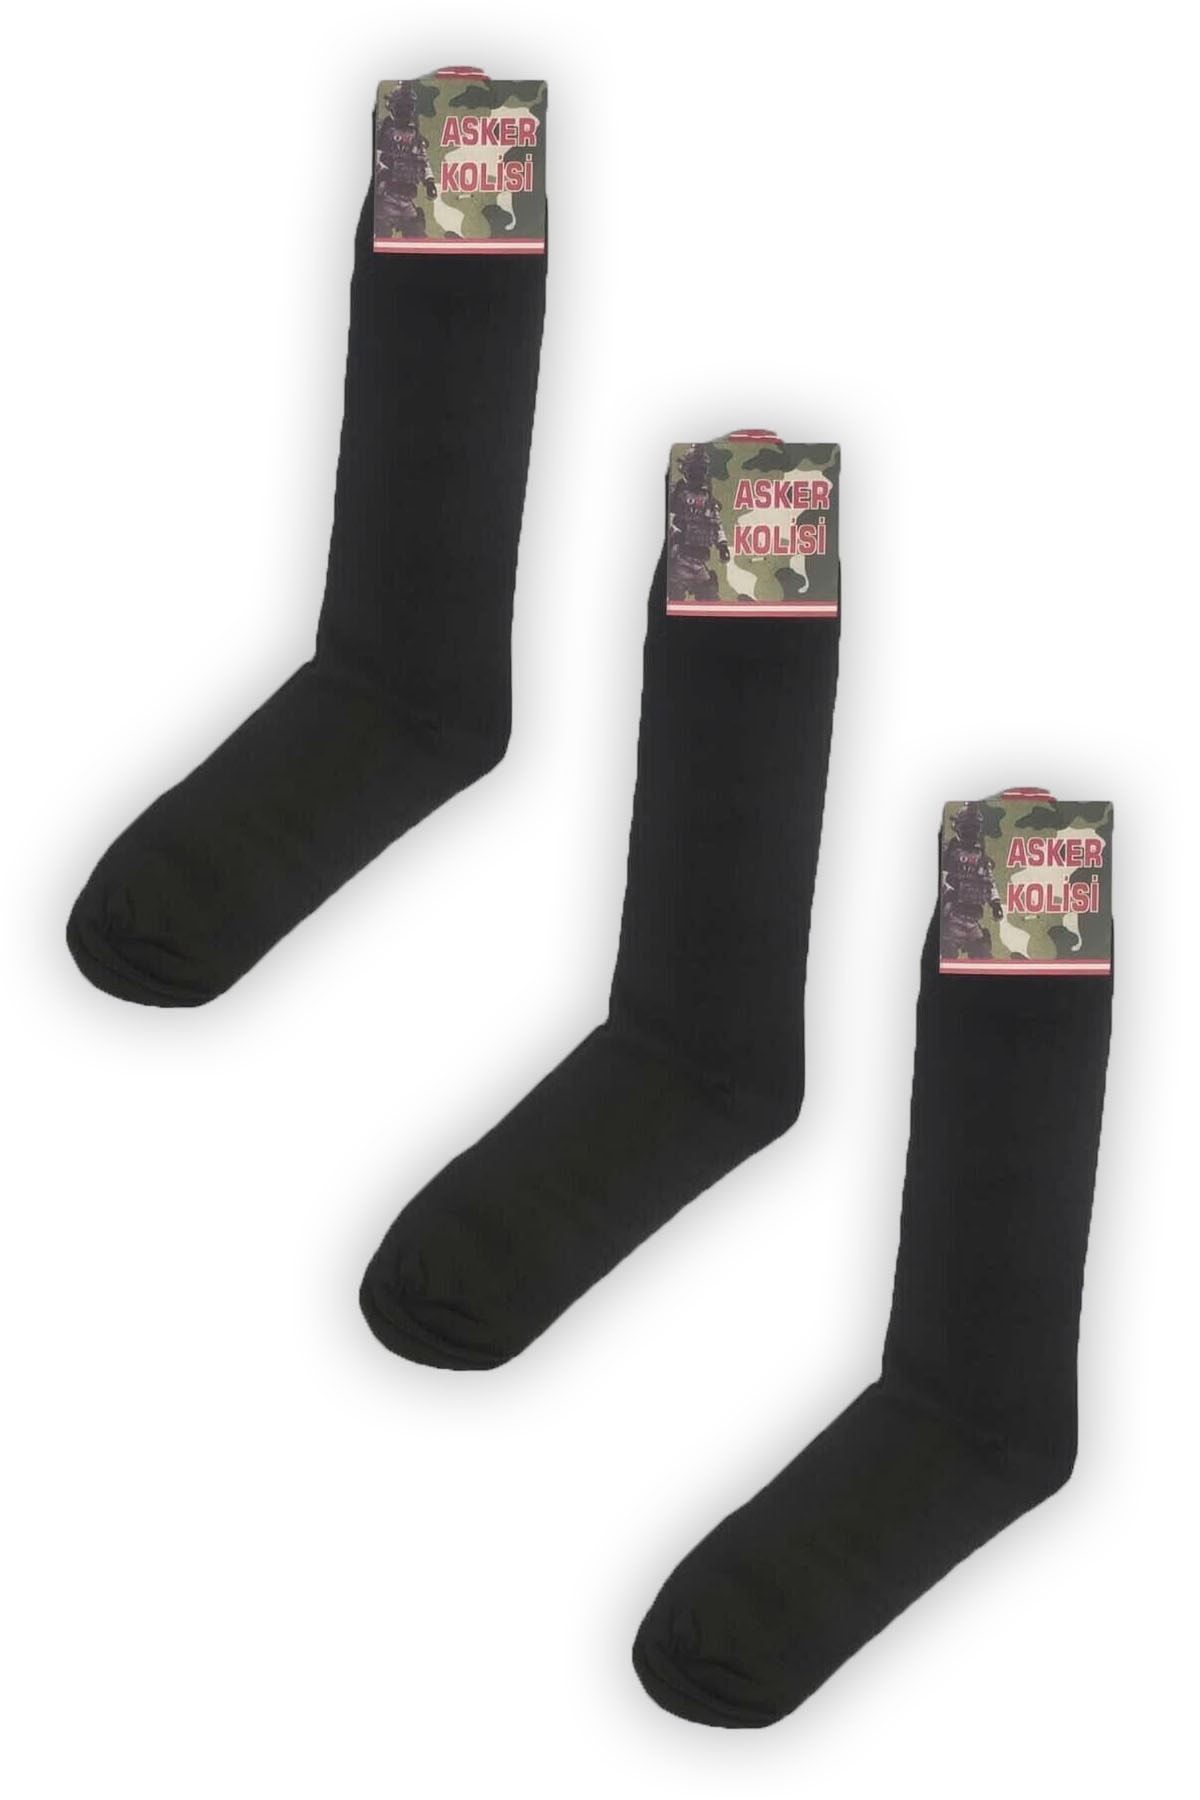 Asker Kolisi 3'lü Siyah Uzun Asker Çorabı - Havacı Asker Çorap - Asker Malzemeleri